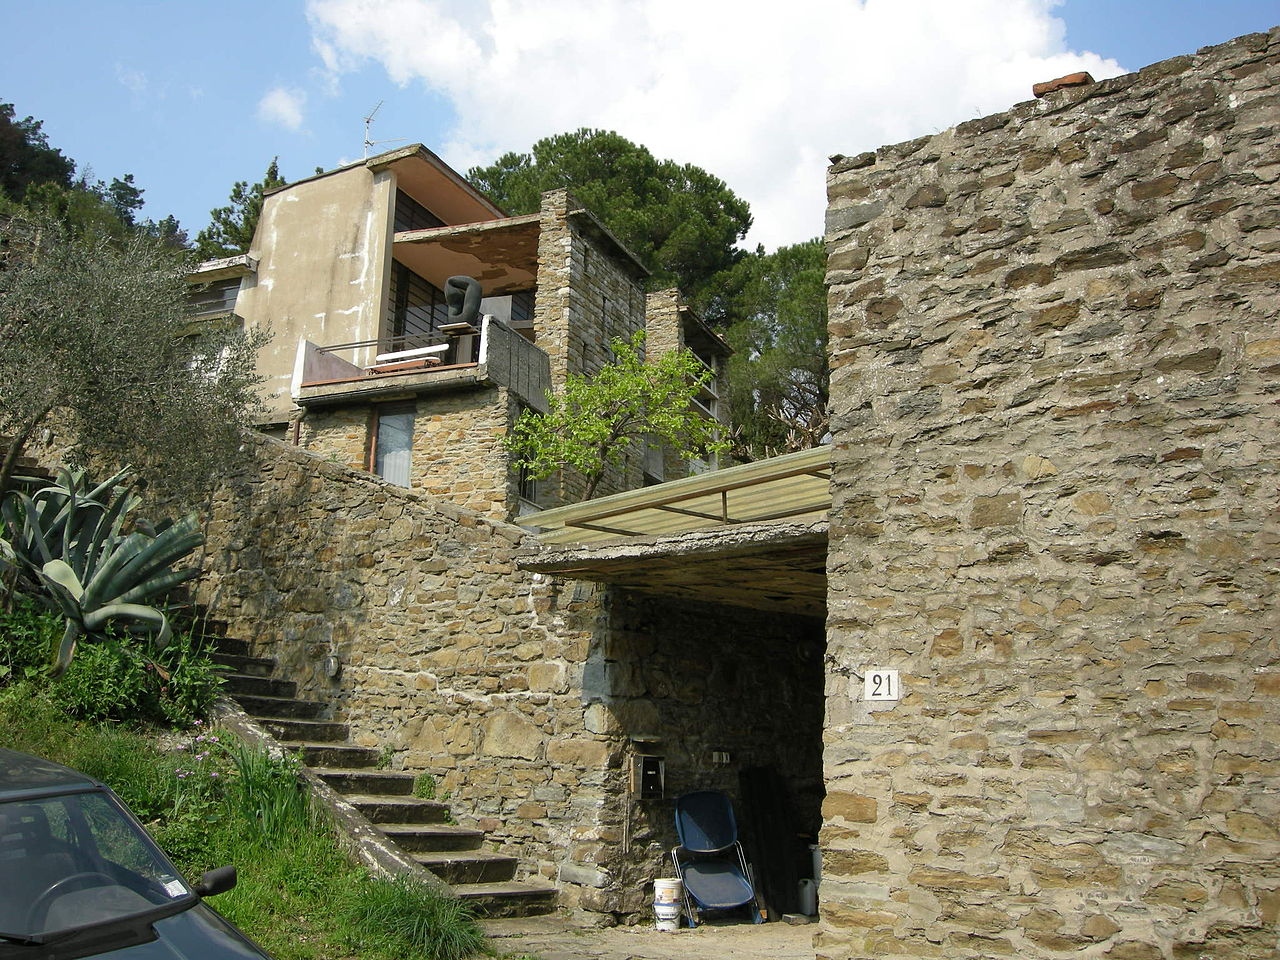 Casa-studio di Leonardo Ricci a Monterinaldi (Fiesole), dettaglio della facciata